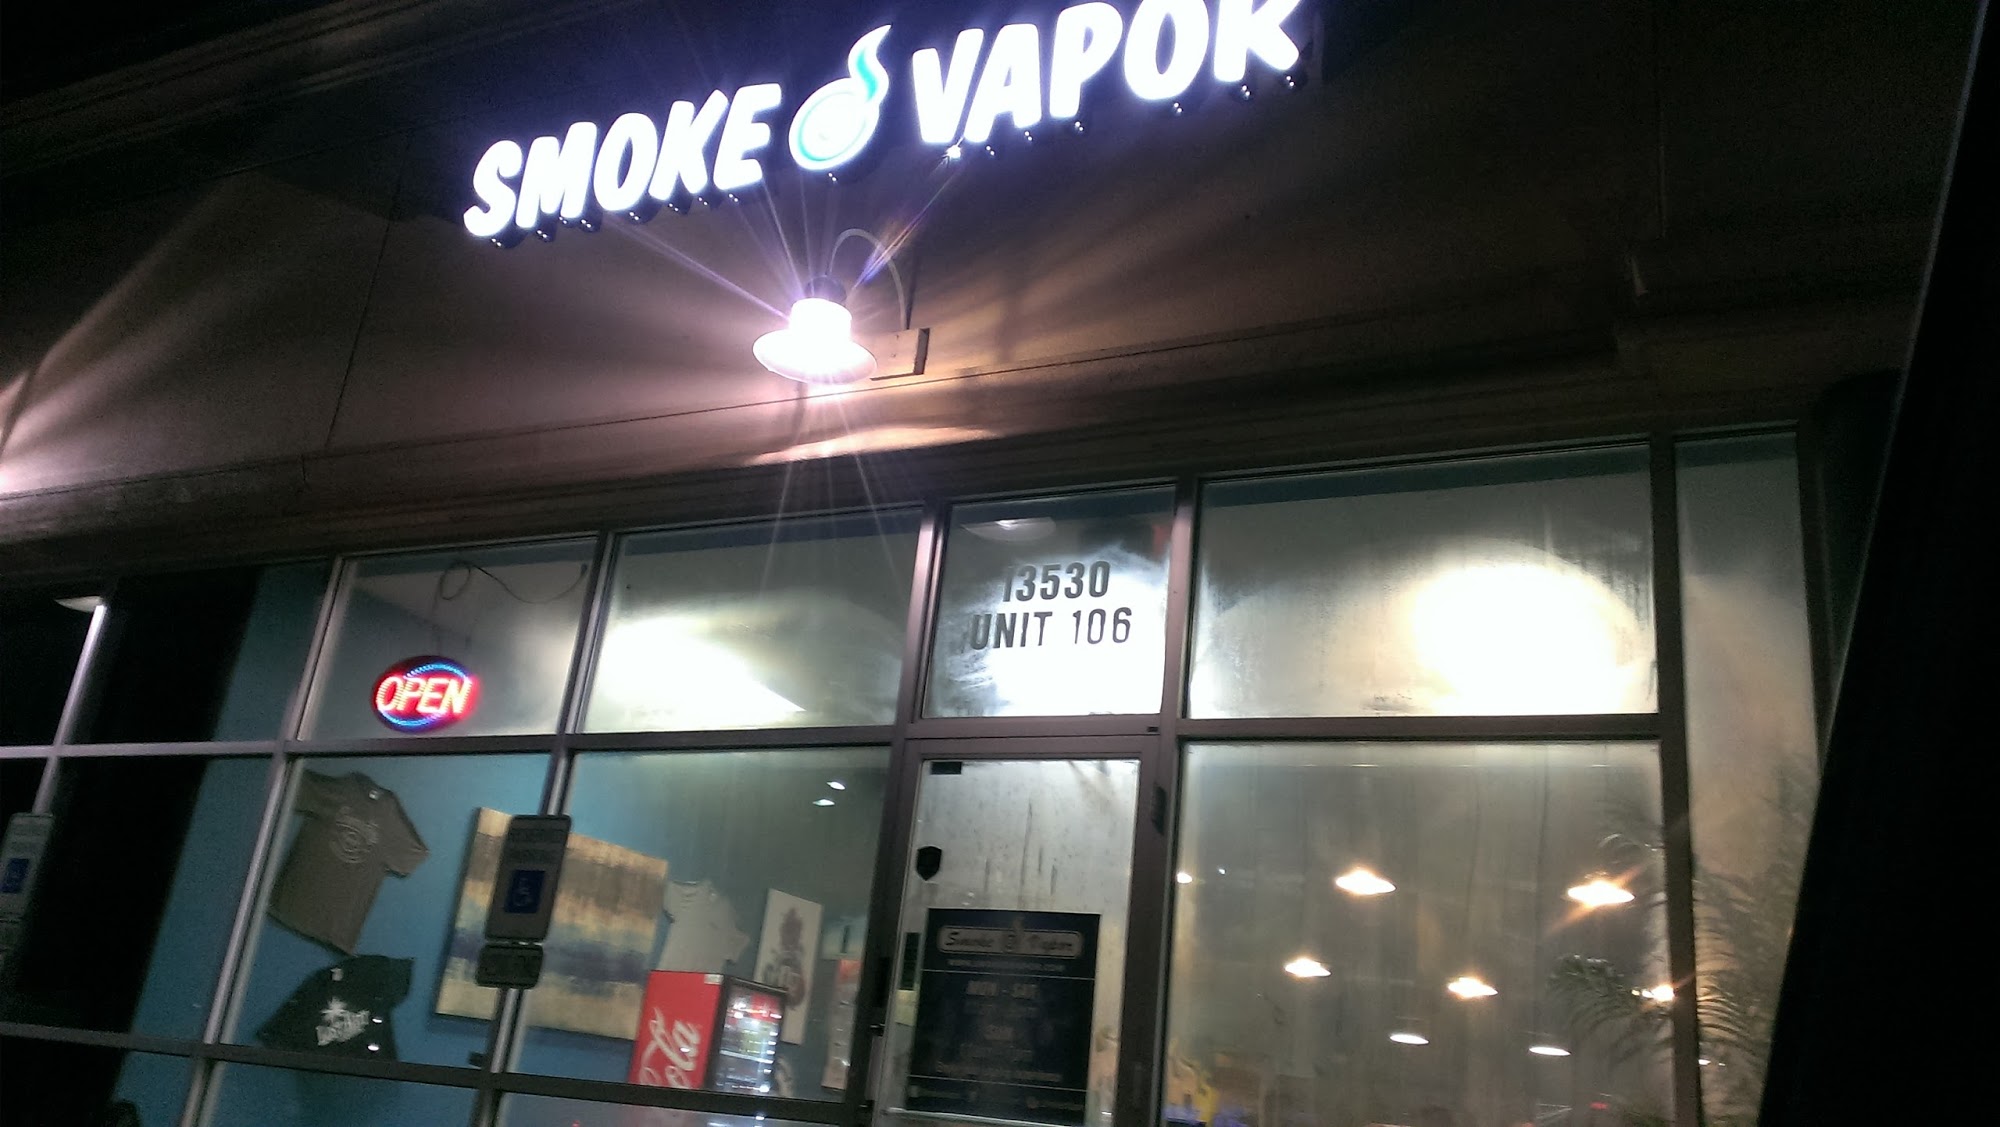 Smokeovapor